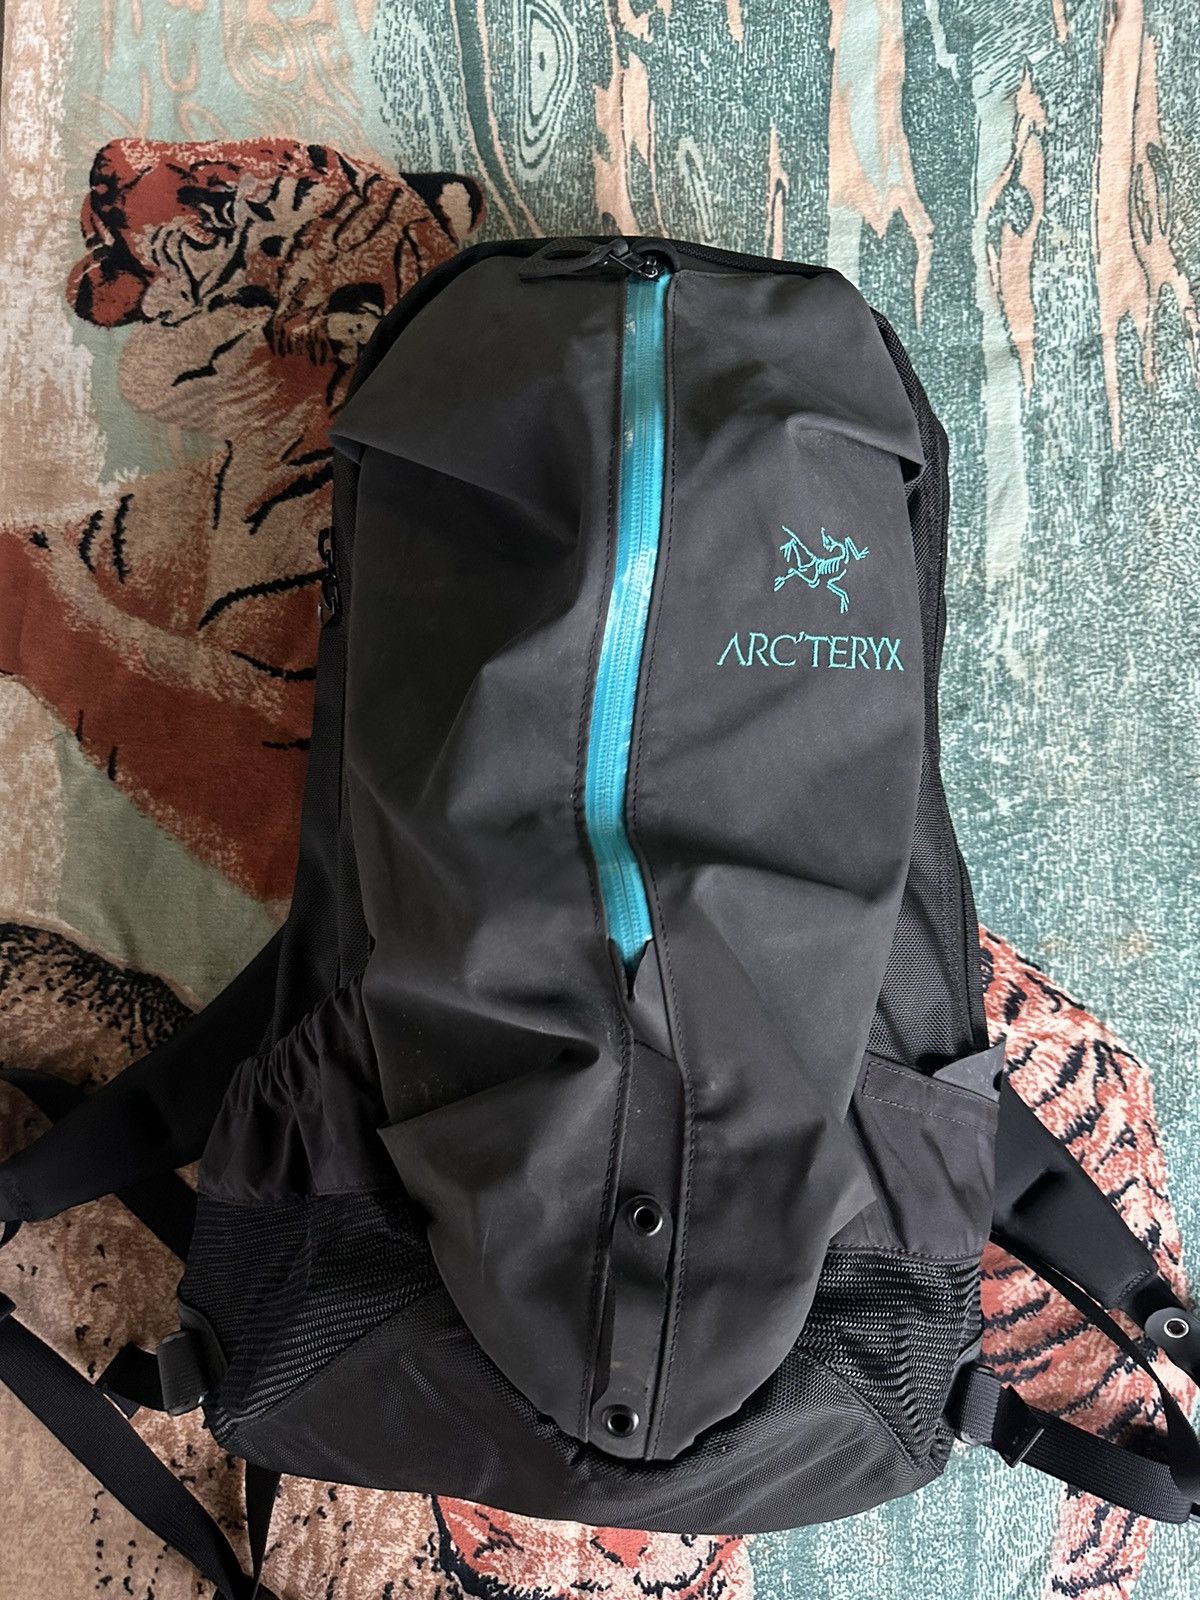 Arc'Teryx Arc'teryx Arro 22 stealth black/blue backpack | Grailed